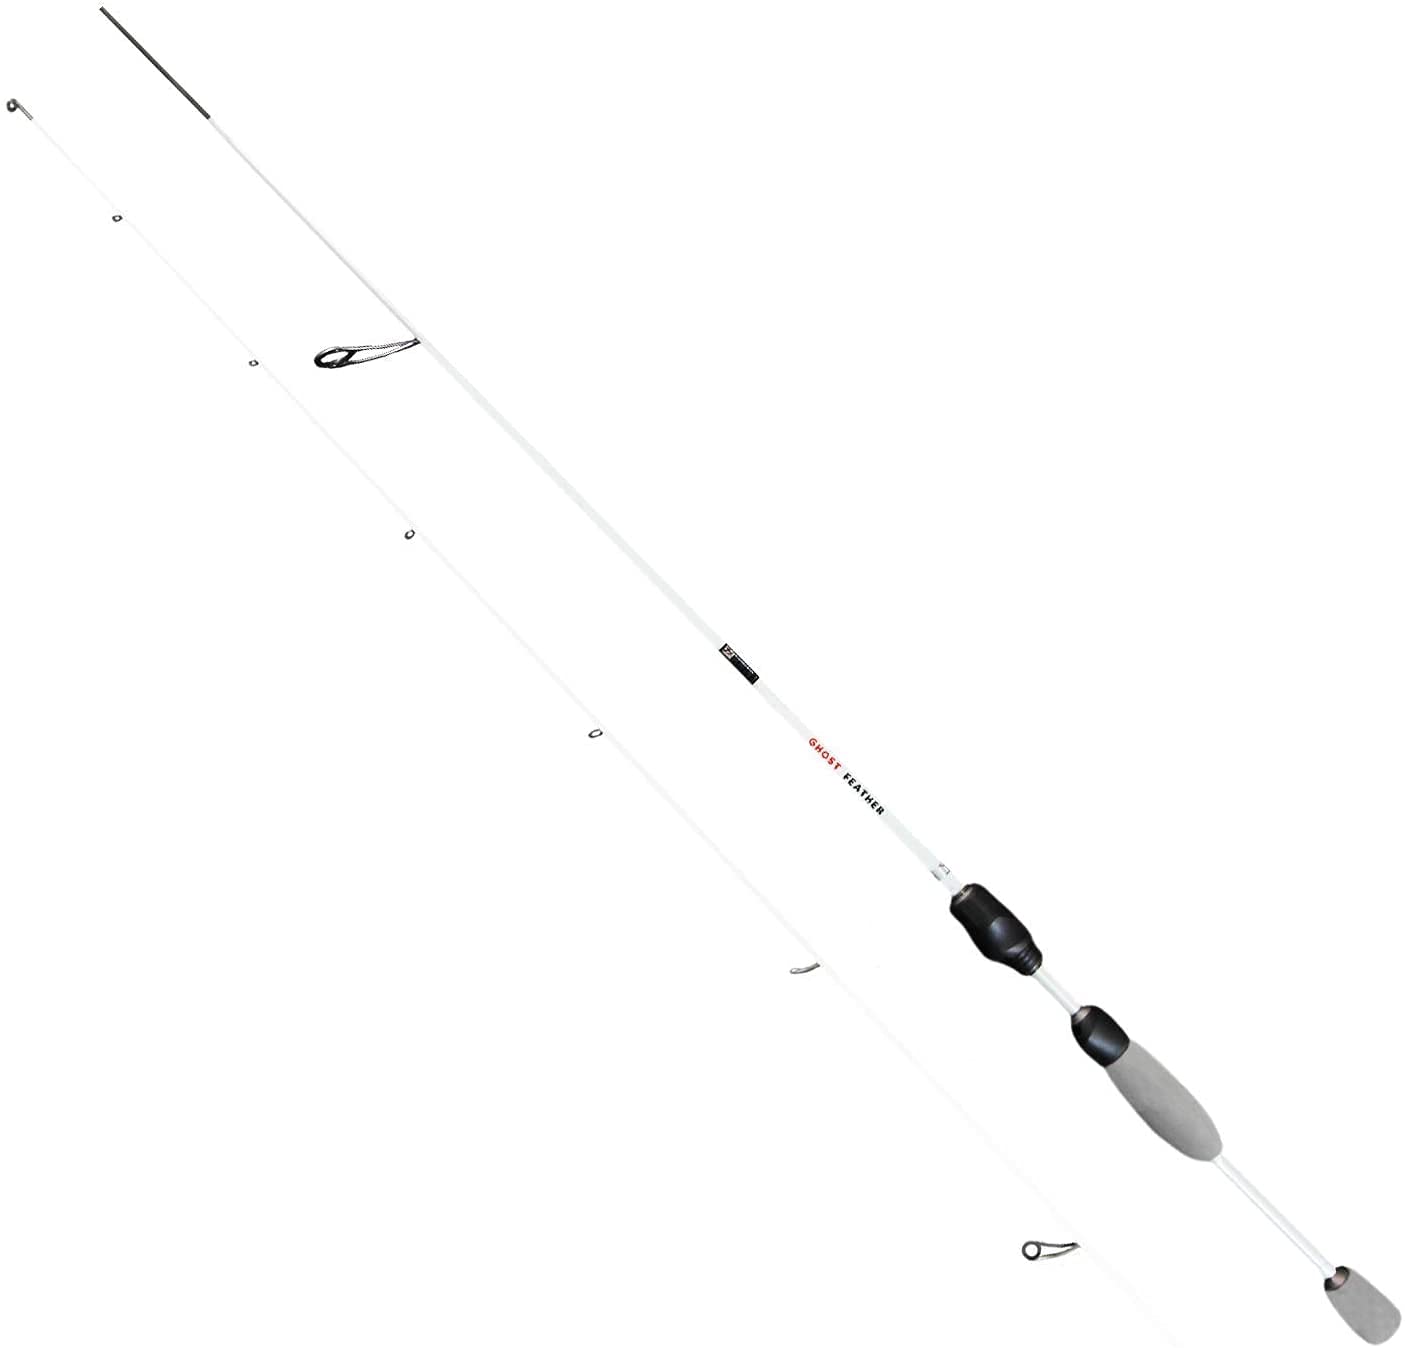 FISHN Feather - Ultraleicht Spinnrute 1,80m Wurfgewicht: 1-7g Angelrute – Spinnrute – Steckrute UL-Rute – direkte Kraftübertragung beim Fischen auf Forelle, Saibling, Barsch (FISHN Feather)